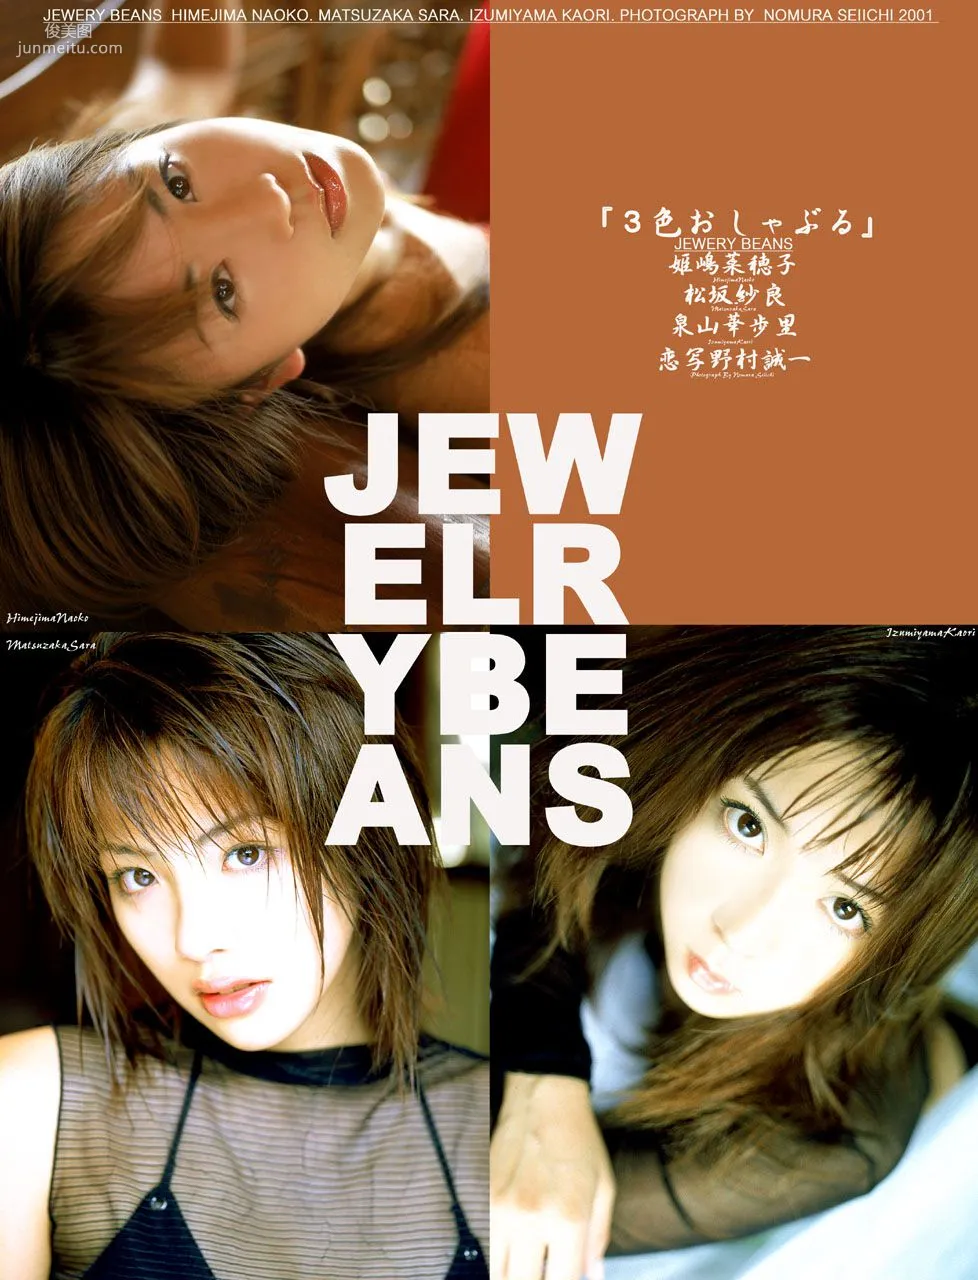 [NS Eyes] SF-No.115 Naoko Himejima 姫嶋菜穂子 Jewelry Beans 写真集1